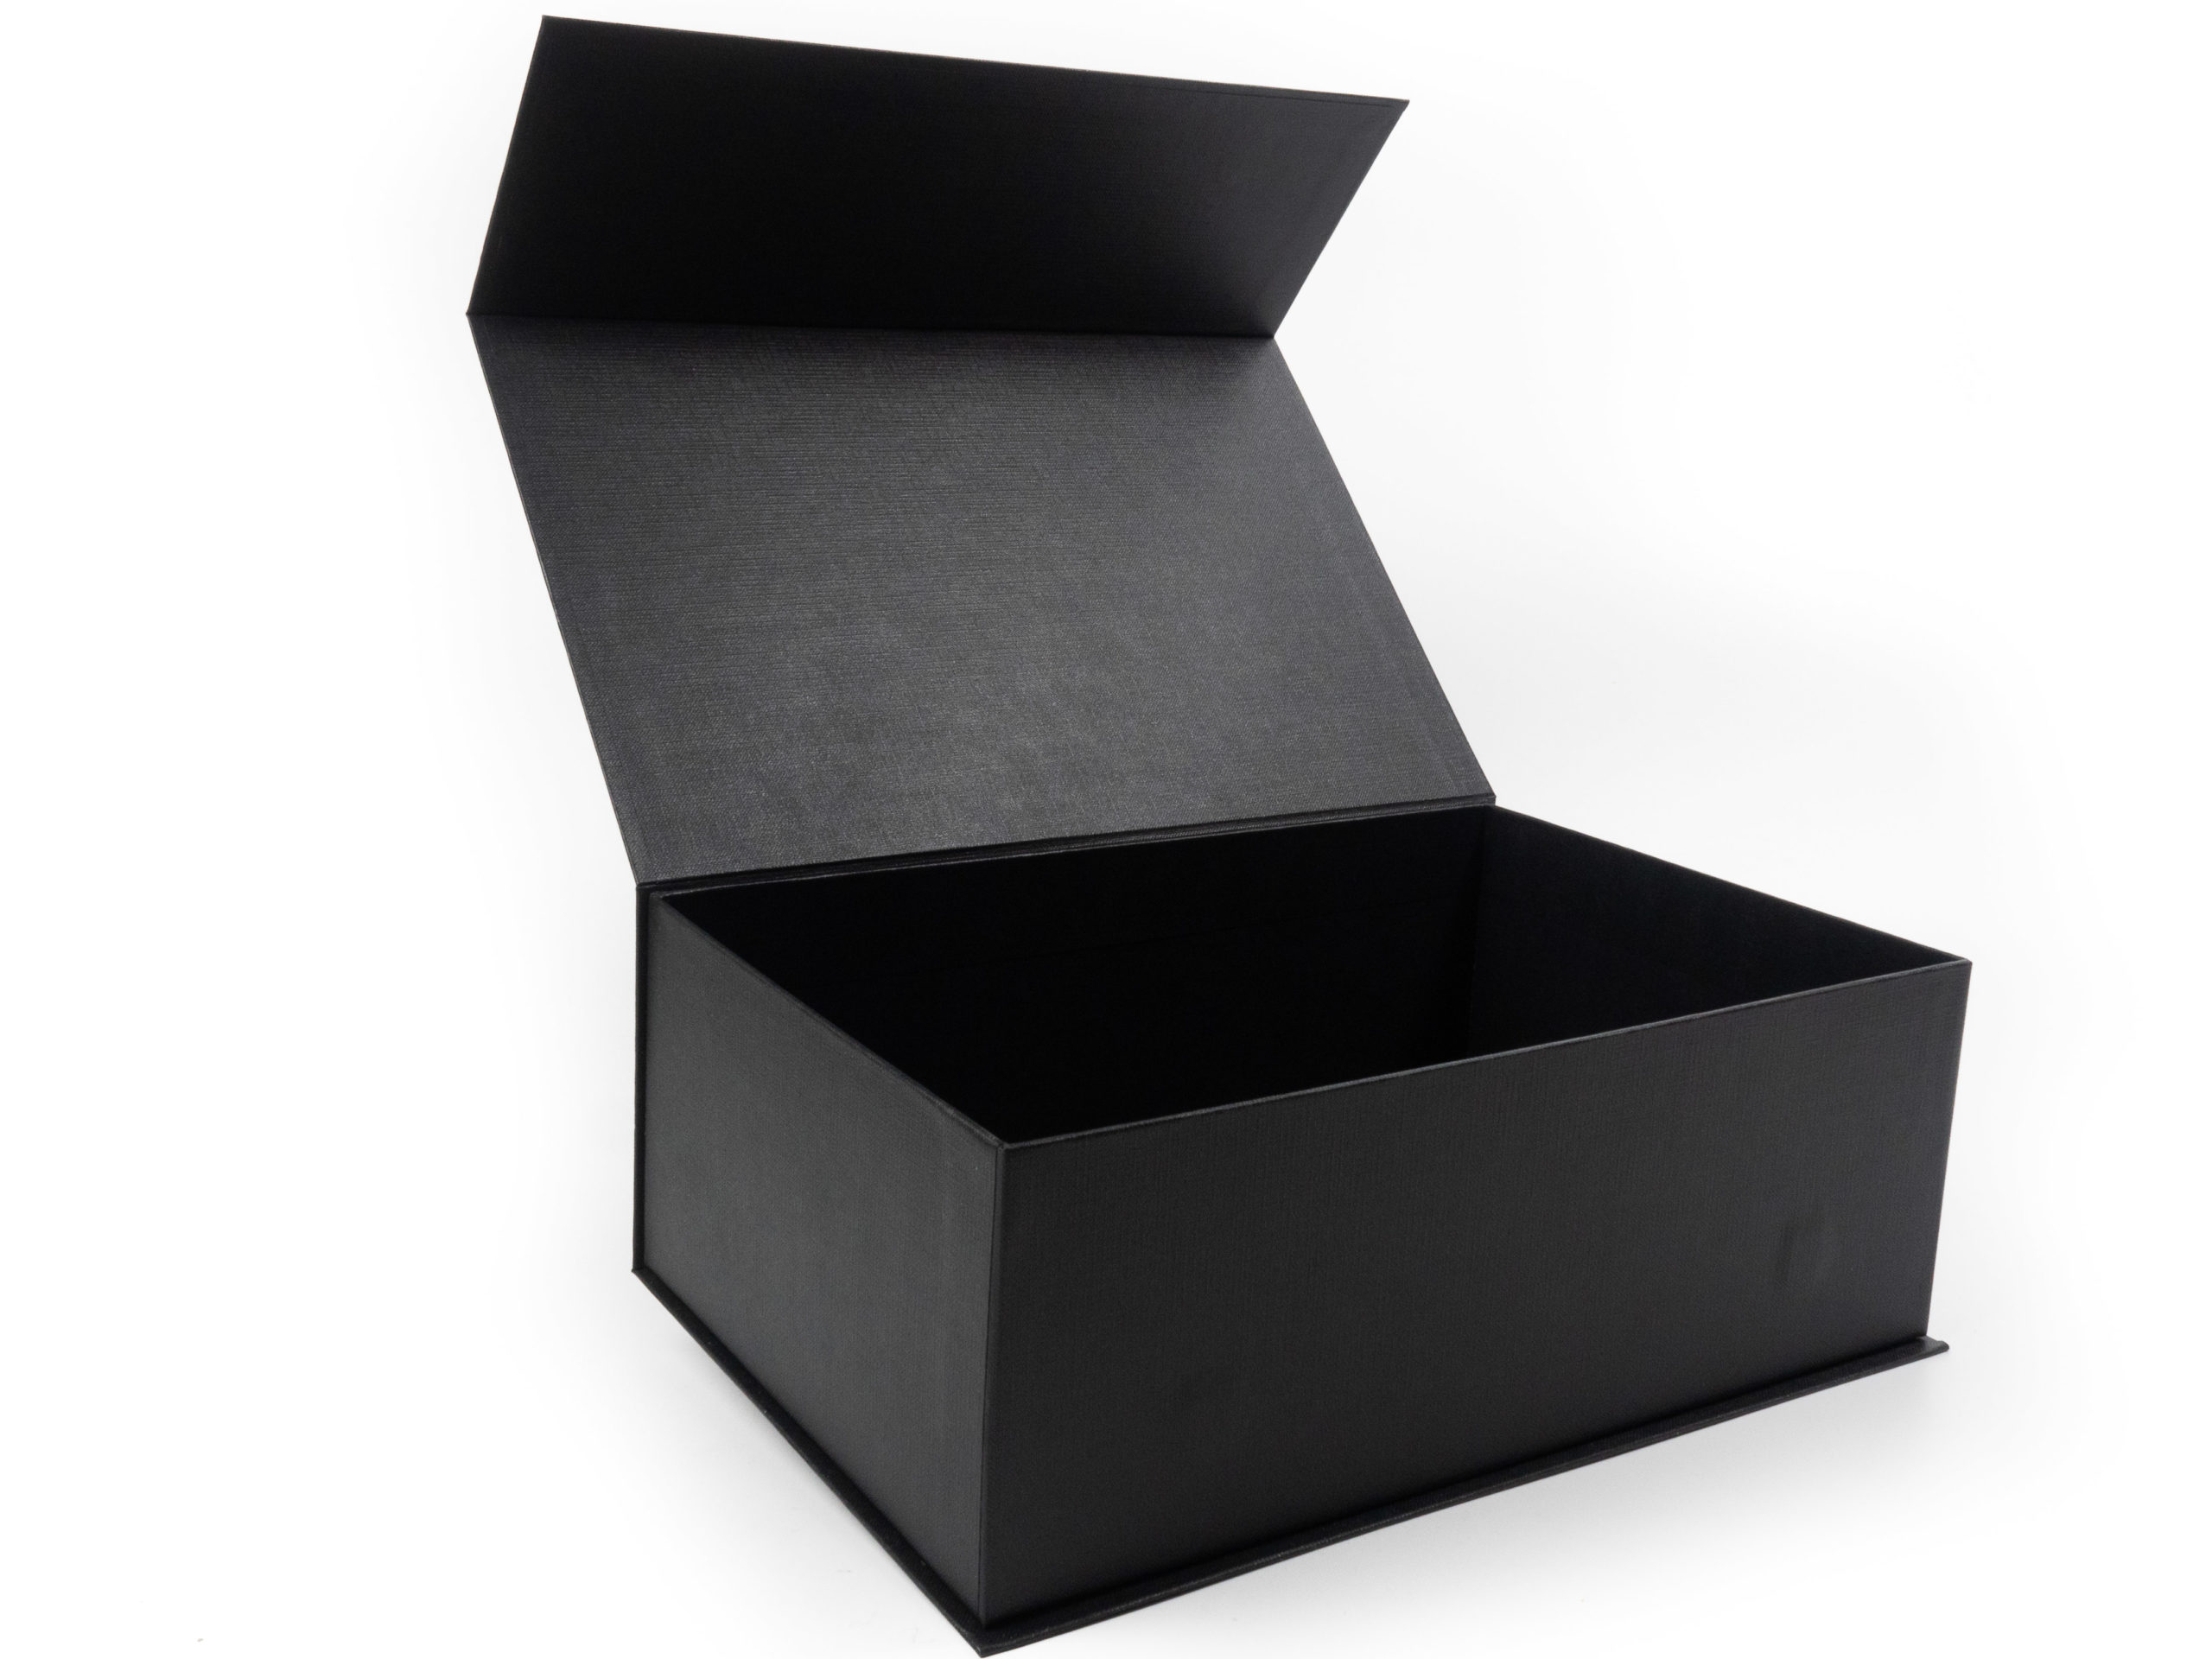 Dárková krabice s magnetickým zavíráním byla vyrobena zcela na zakázku jako dárek k představení nového vozu Lexus. Zvenku byla použita stříbrná ražba loga.